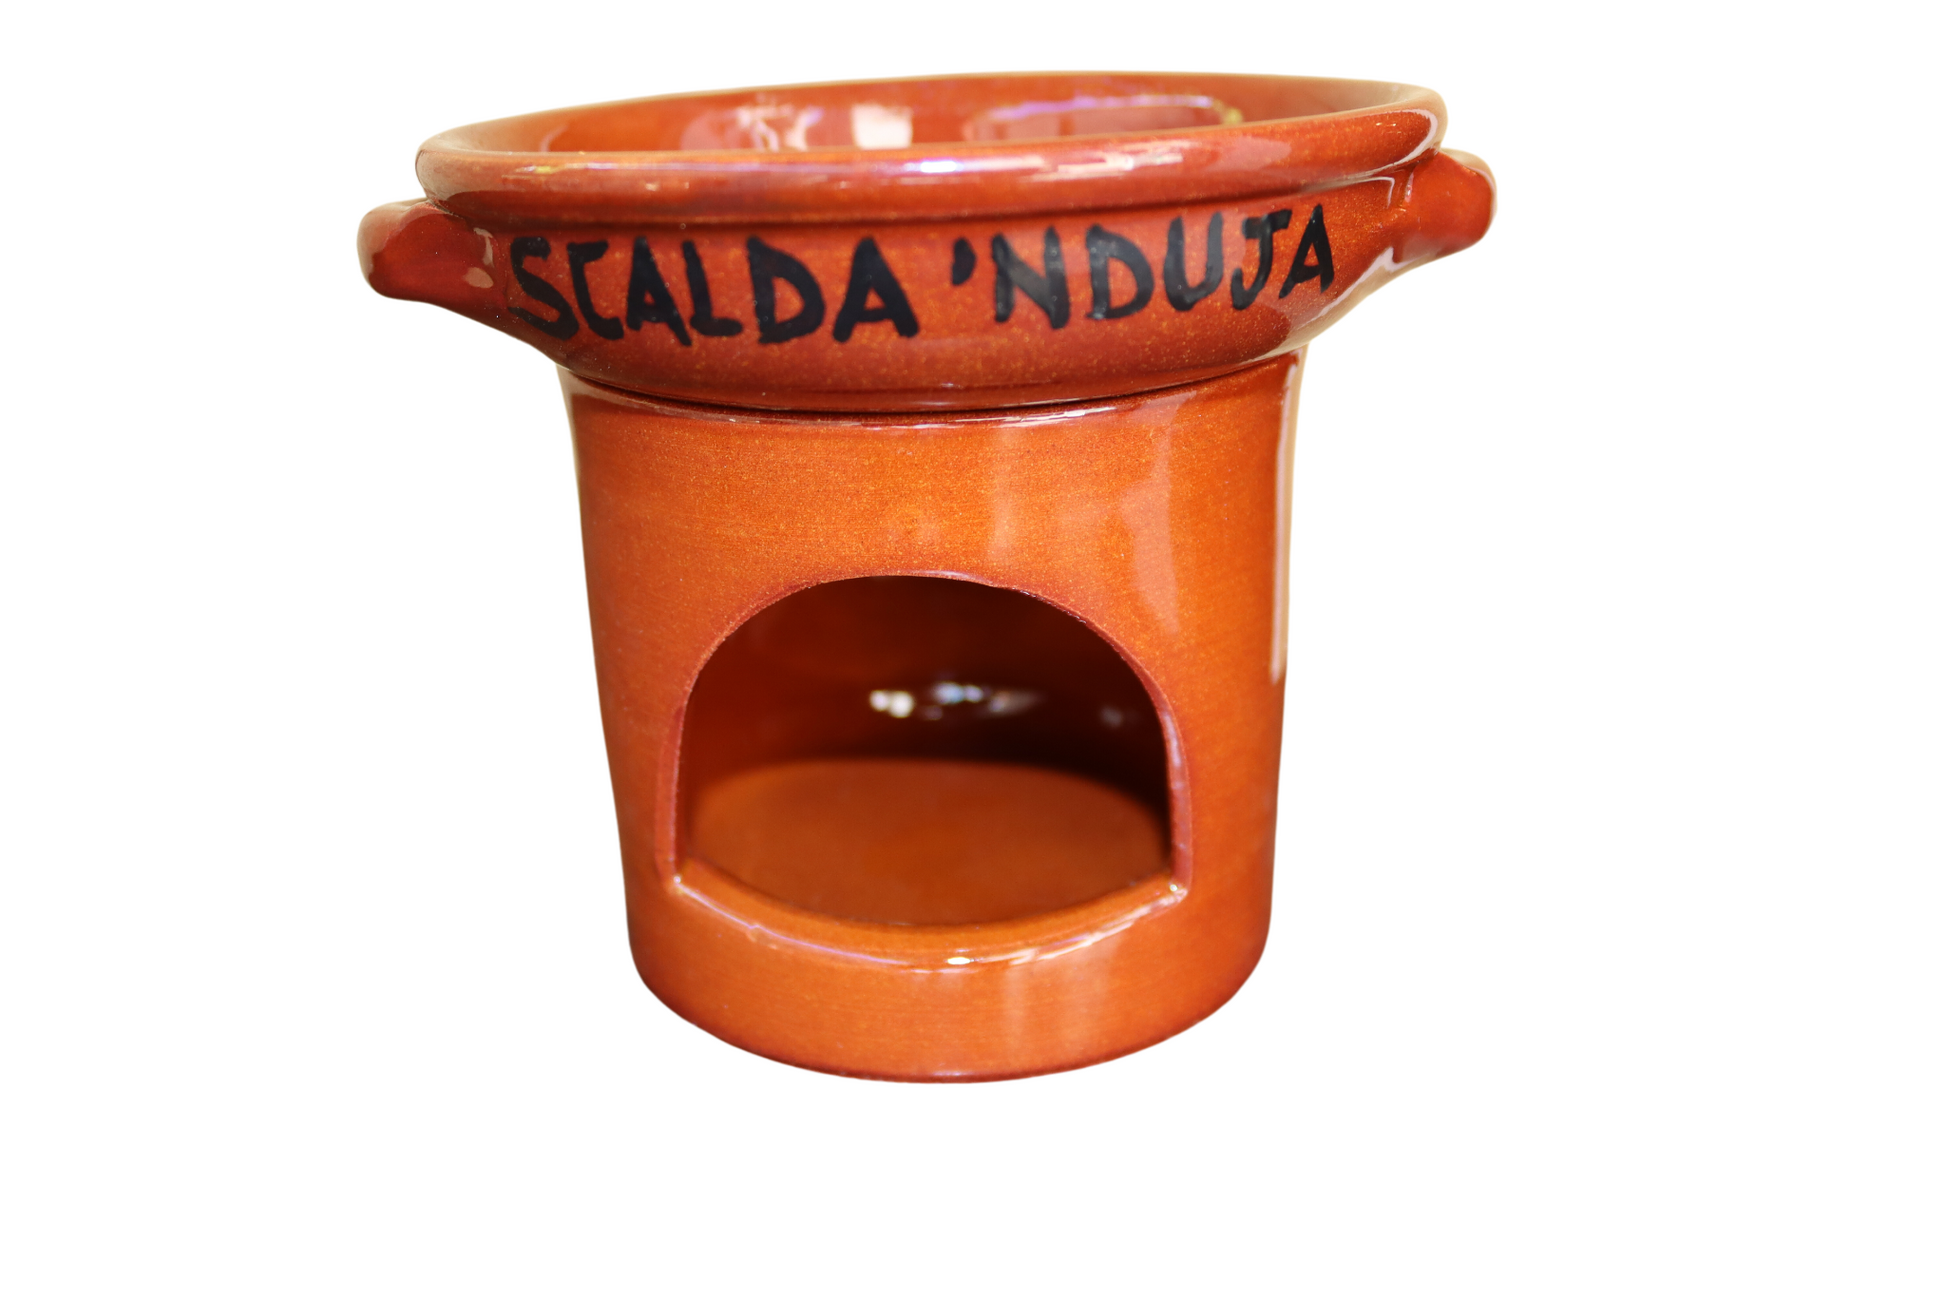 Scalda Nduja calabrese artigianale in terracotta alta qualità